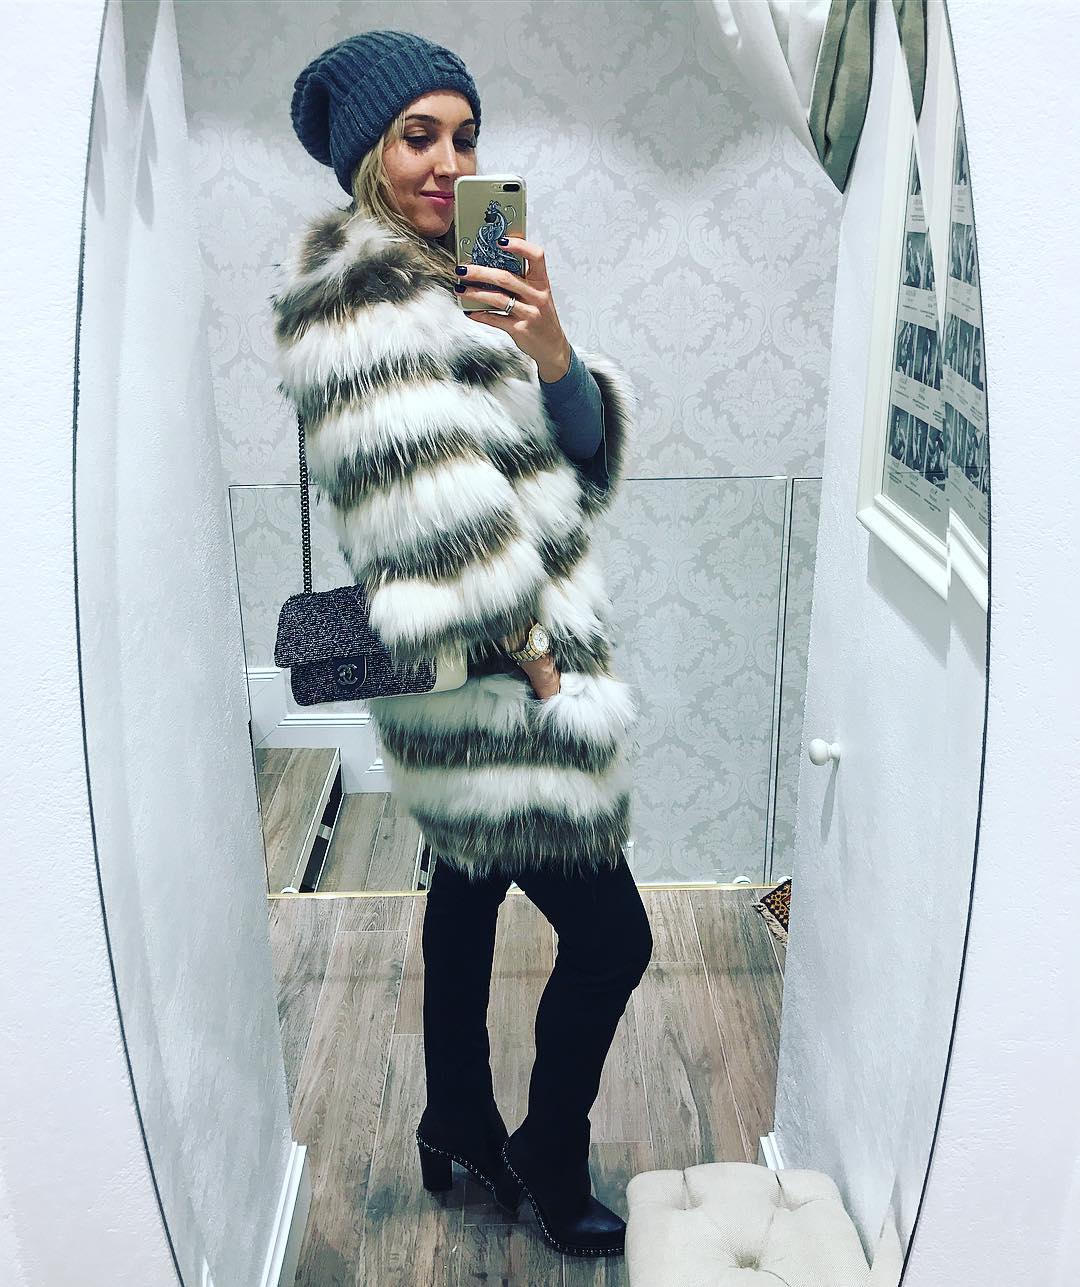 Елена Веснина обновила свою фотоленту в своем Инстаграме